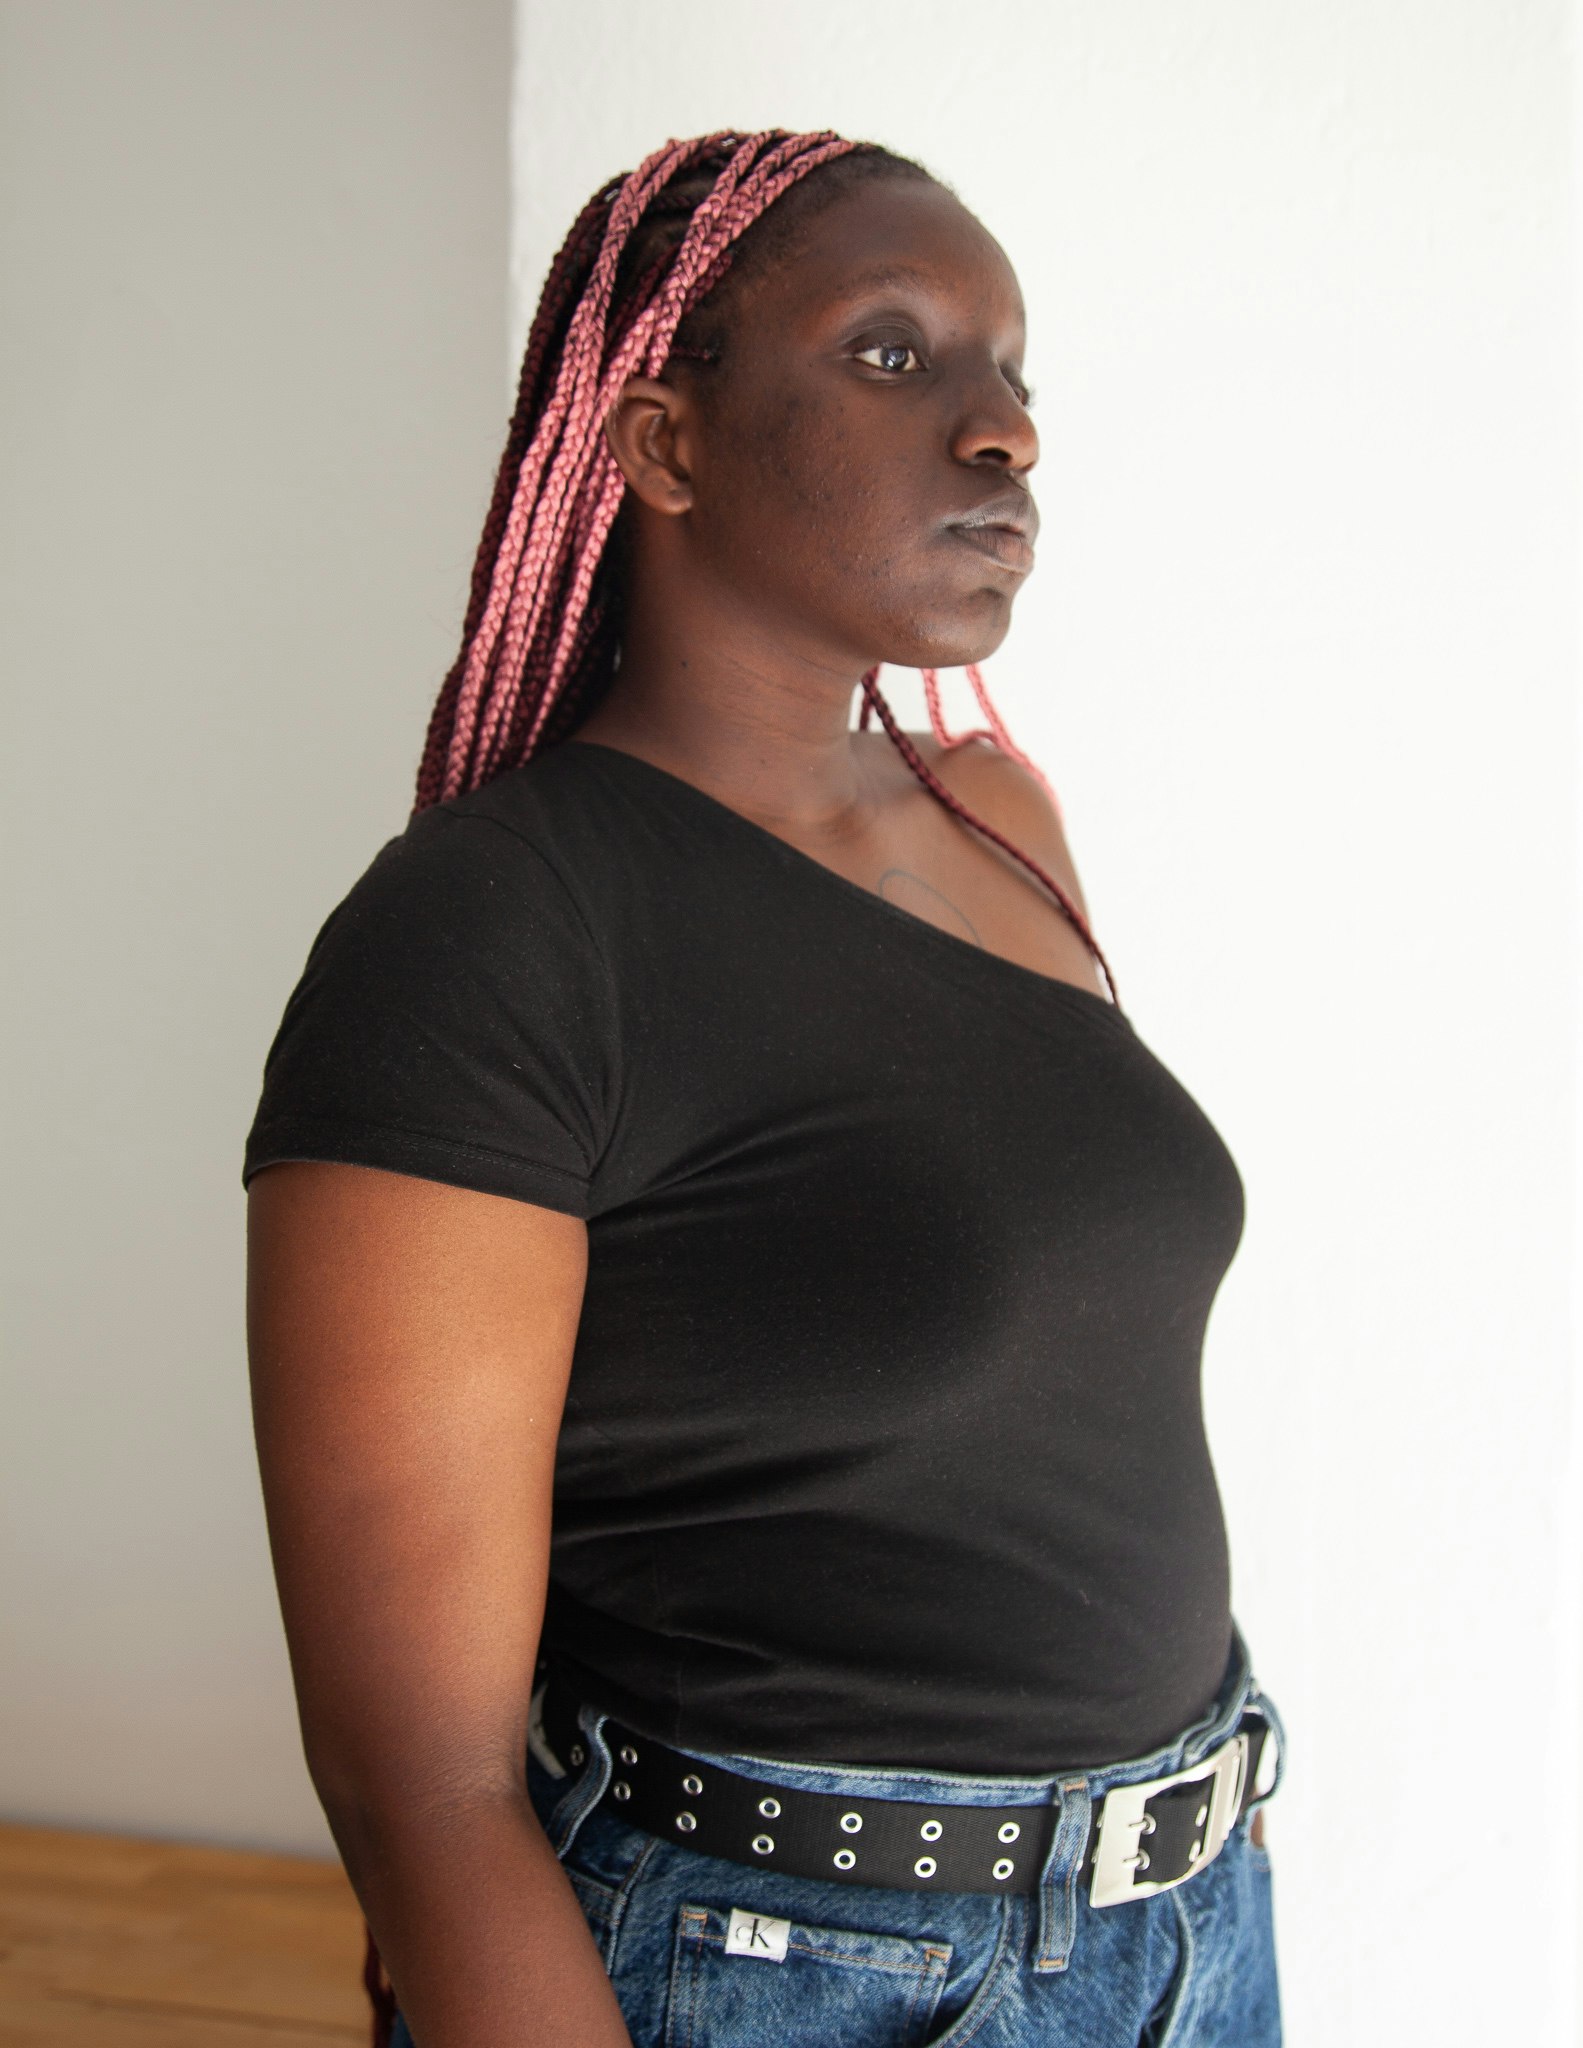 An image of Antoinette Ndiaye Sow